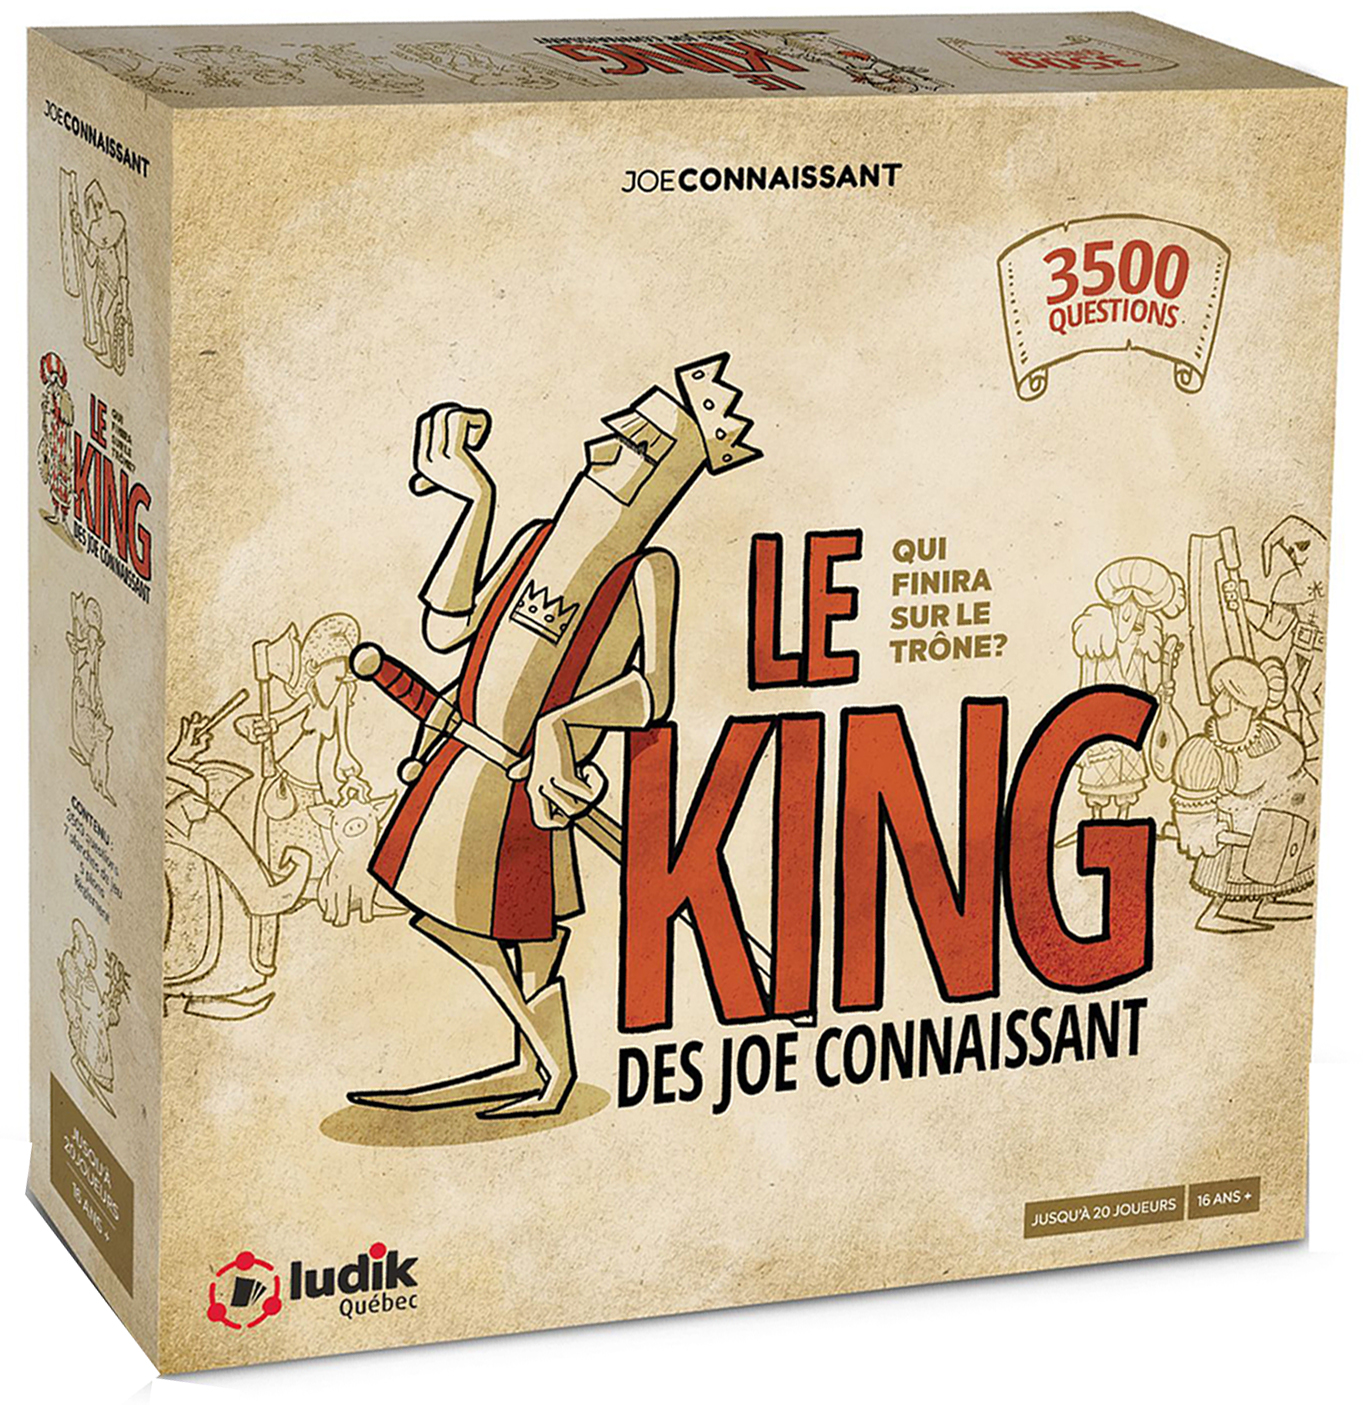 Boîte du jeu Le King des Joe Connaissant